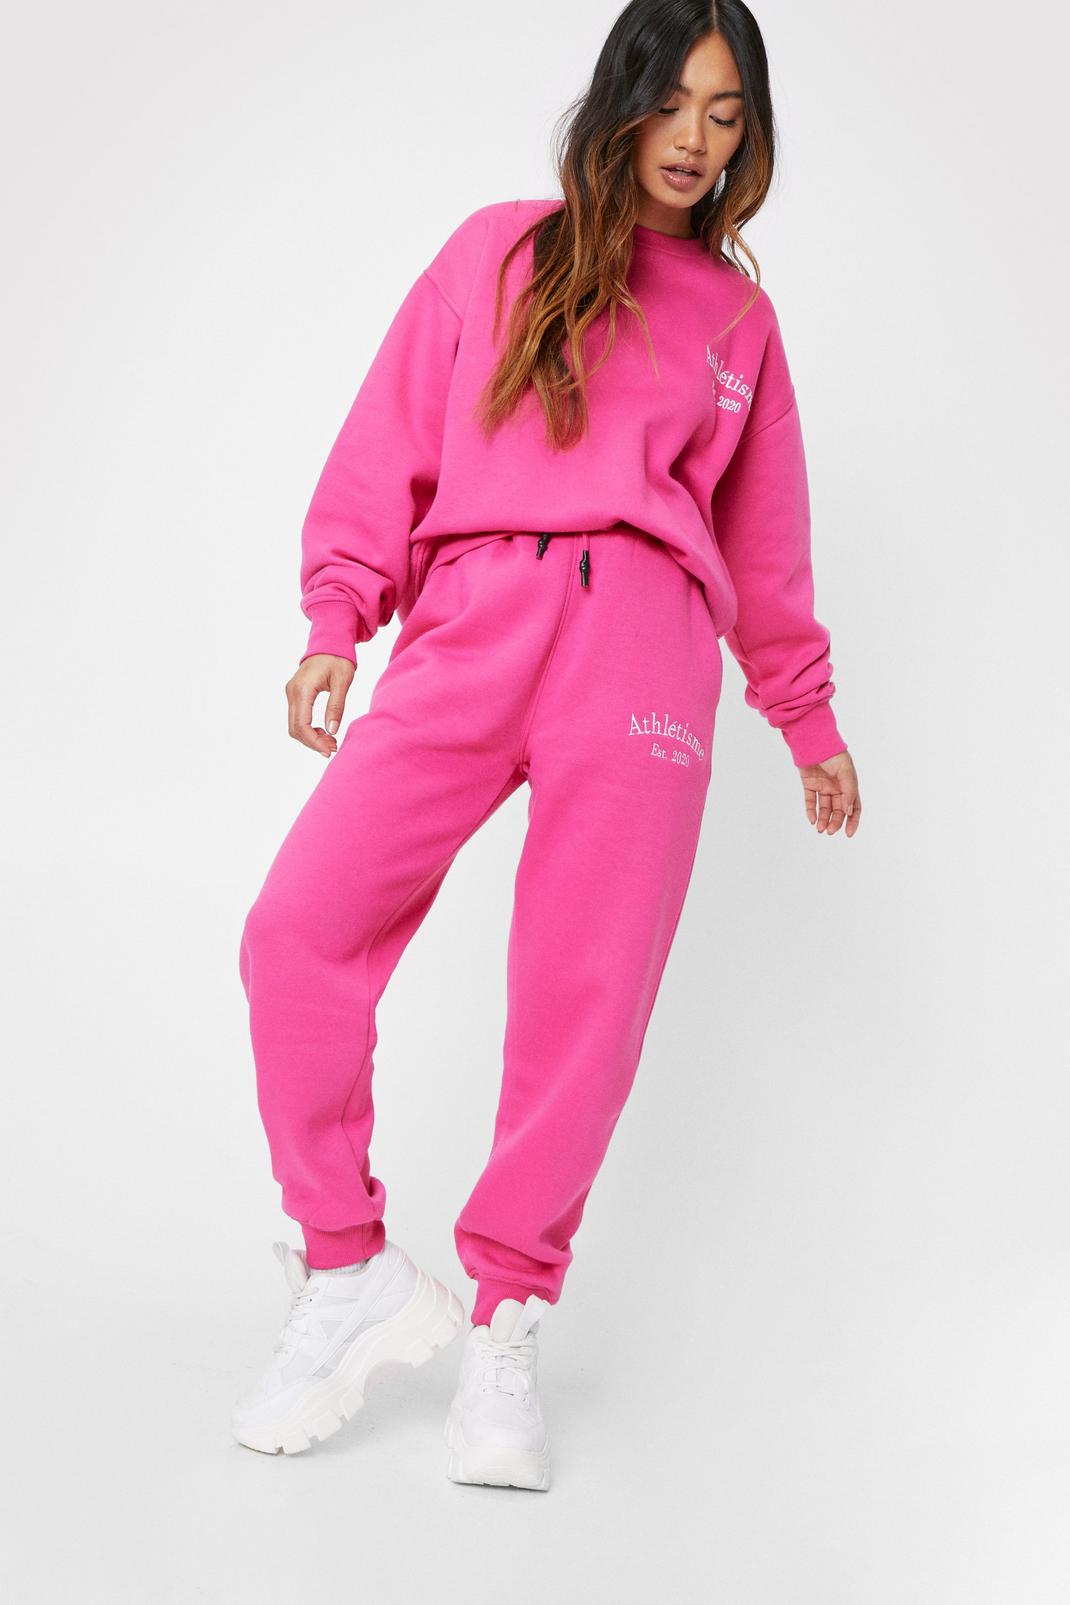 Petite - Pantalon de jogging ample à broderie Athlétisme, Hot pink image number 1